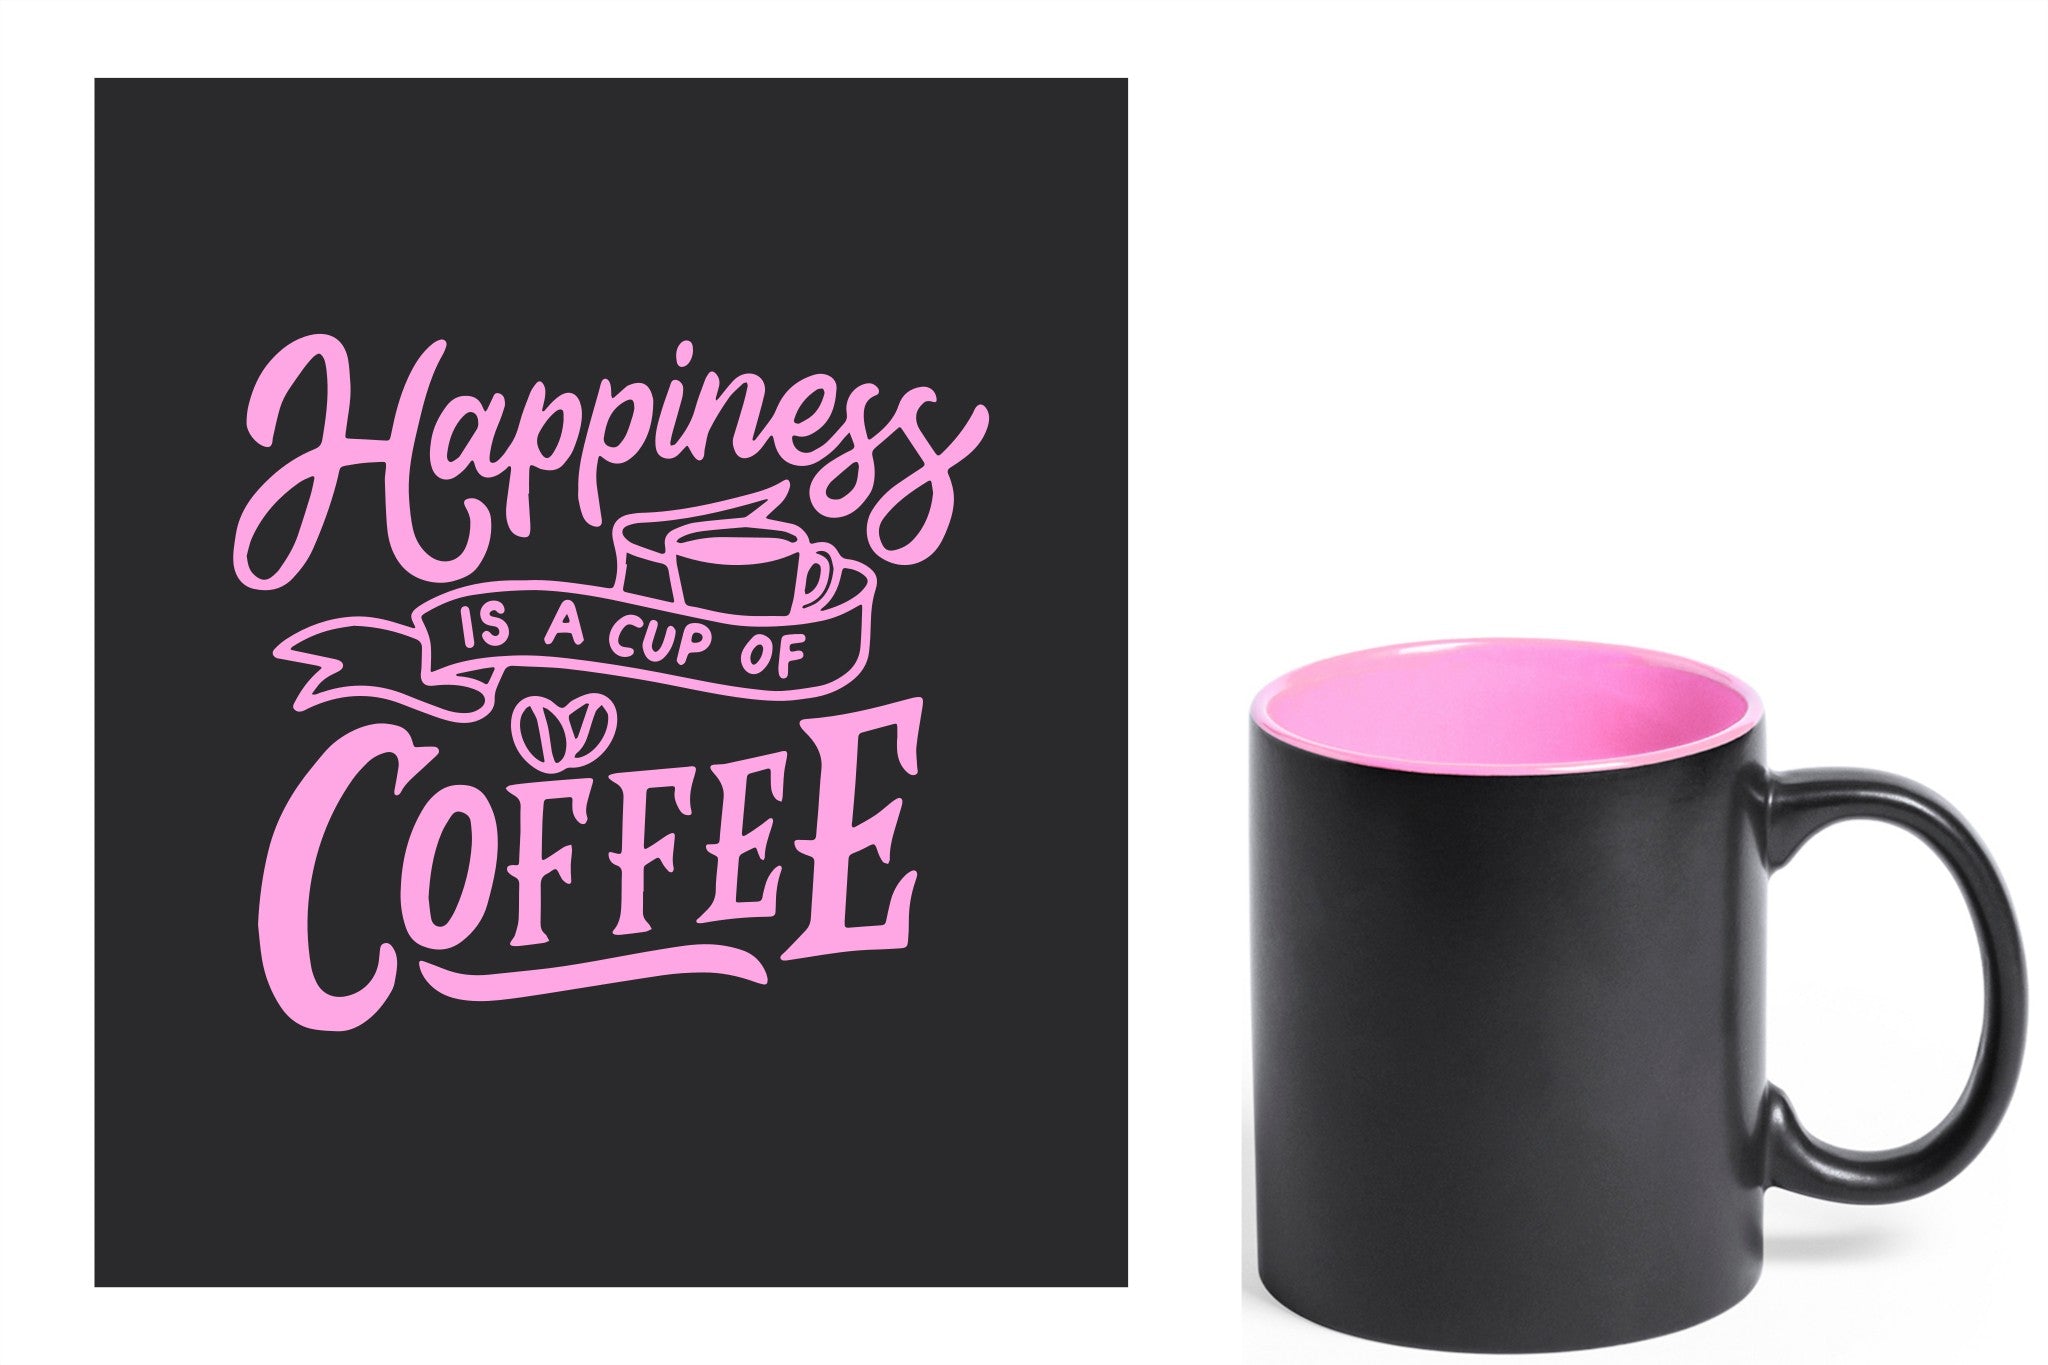 zwarte keramische mok met roze gravure  'Happiness is a cup of coffee'.